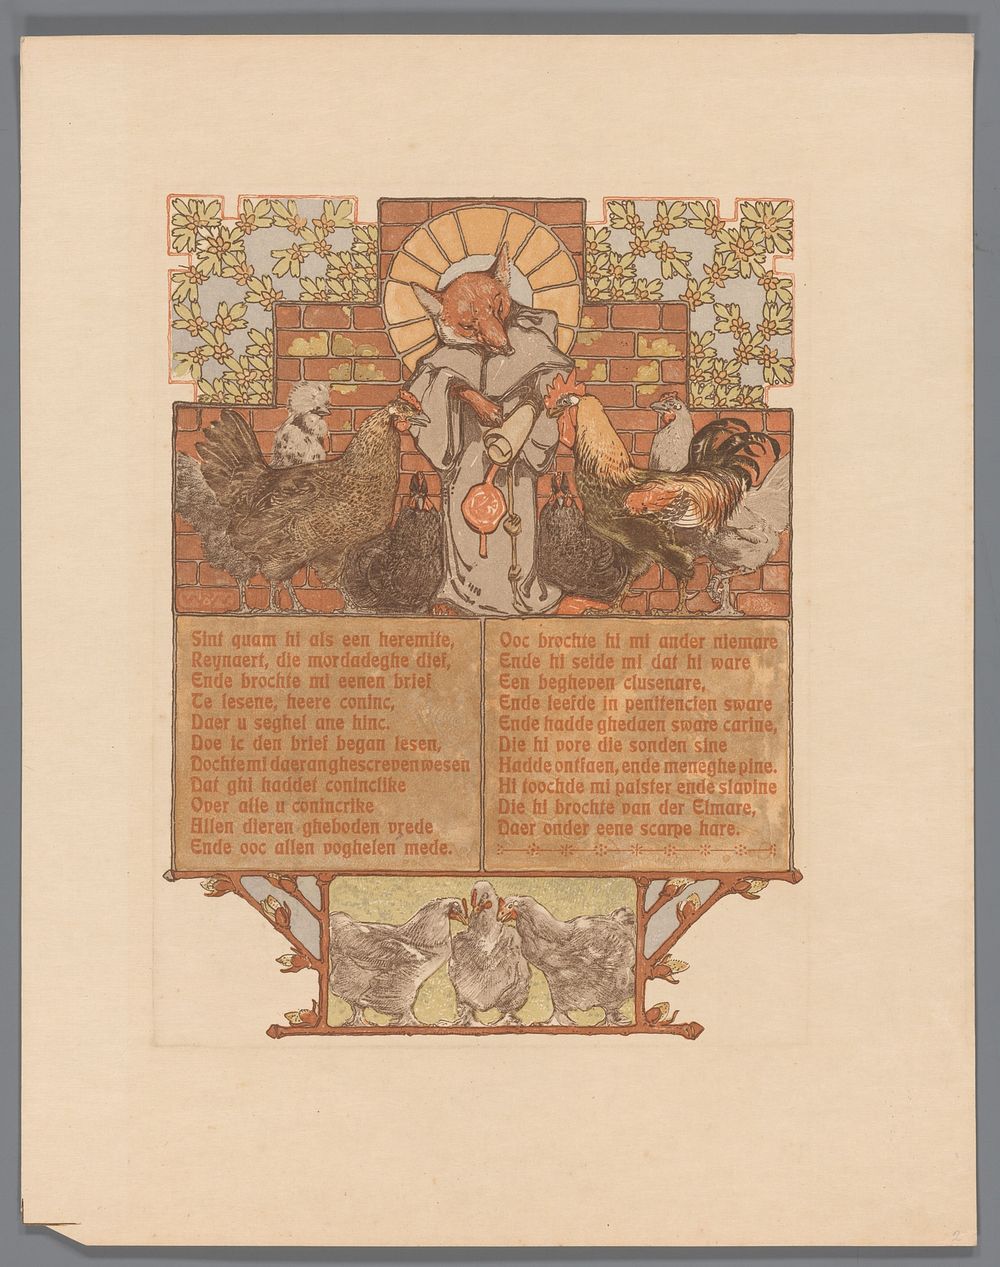 Vos in monnikspij (Reinaert) omringd door kippen en haan (Cantecleer) (1910) by Bernard Willem Wierink